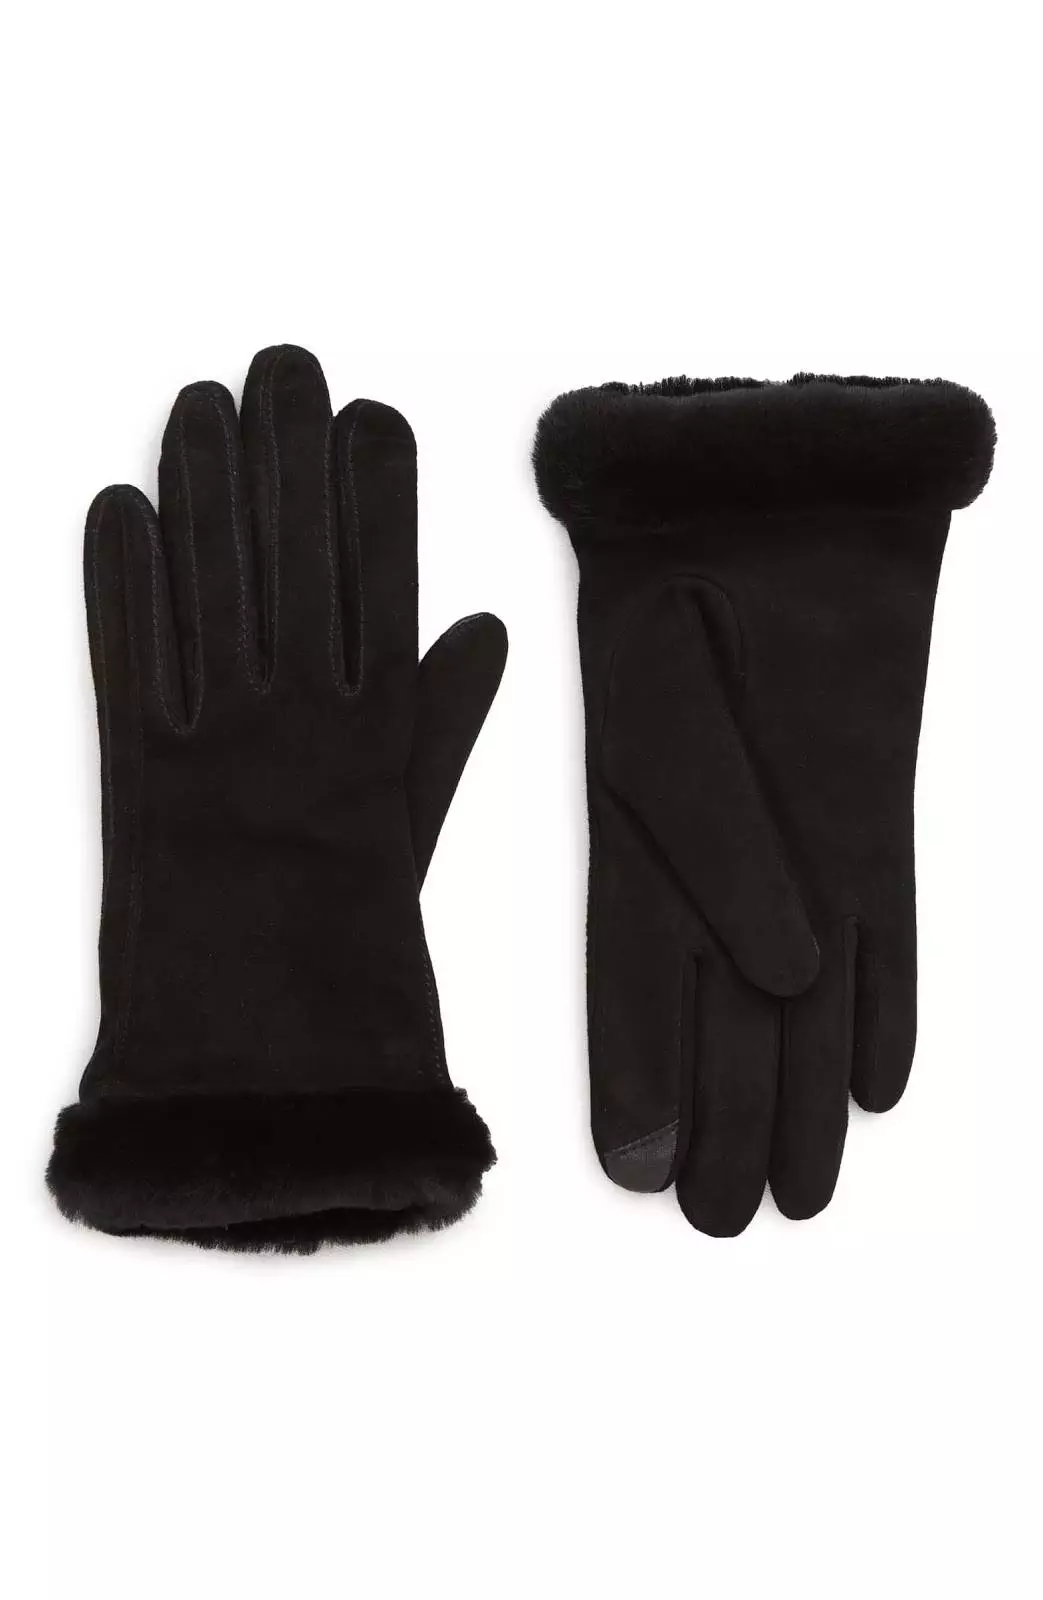 Nordstrom touchscreen gloves